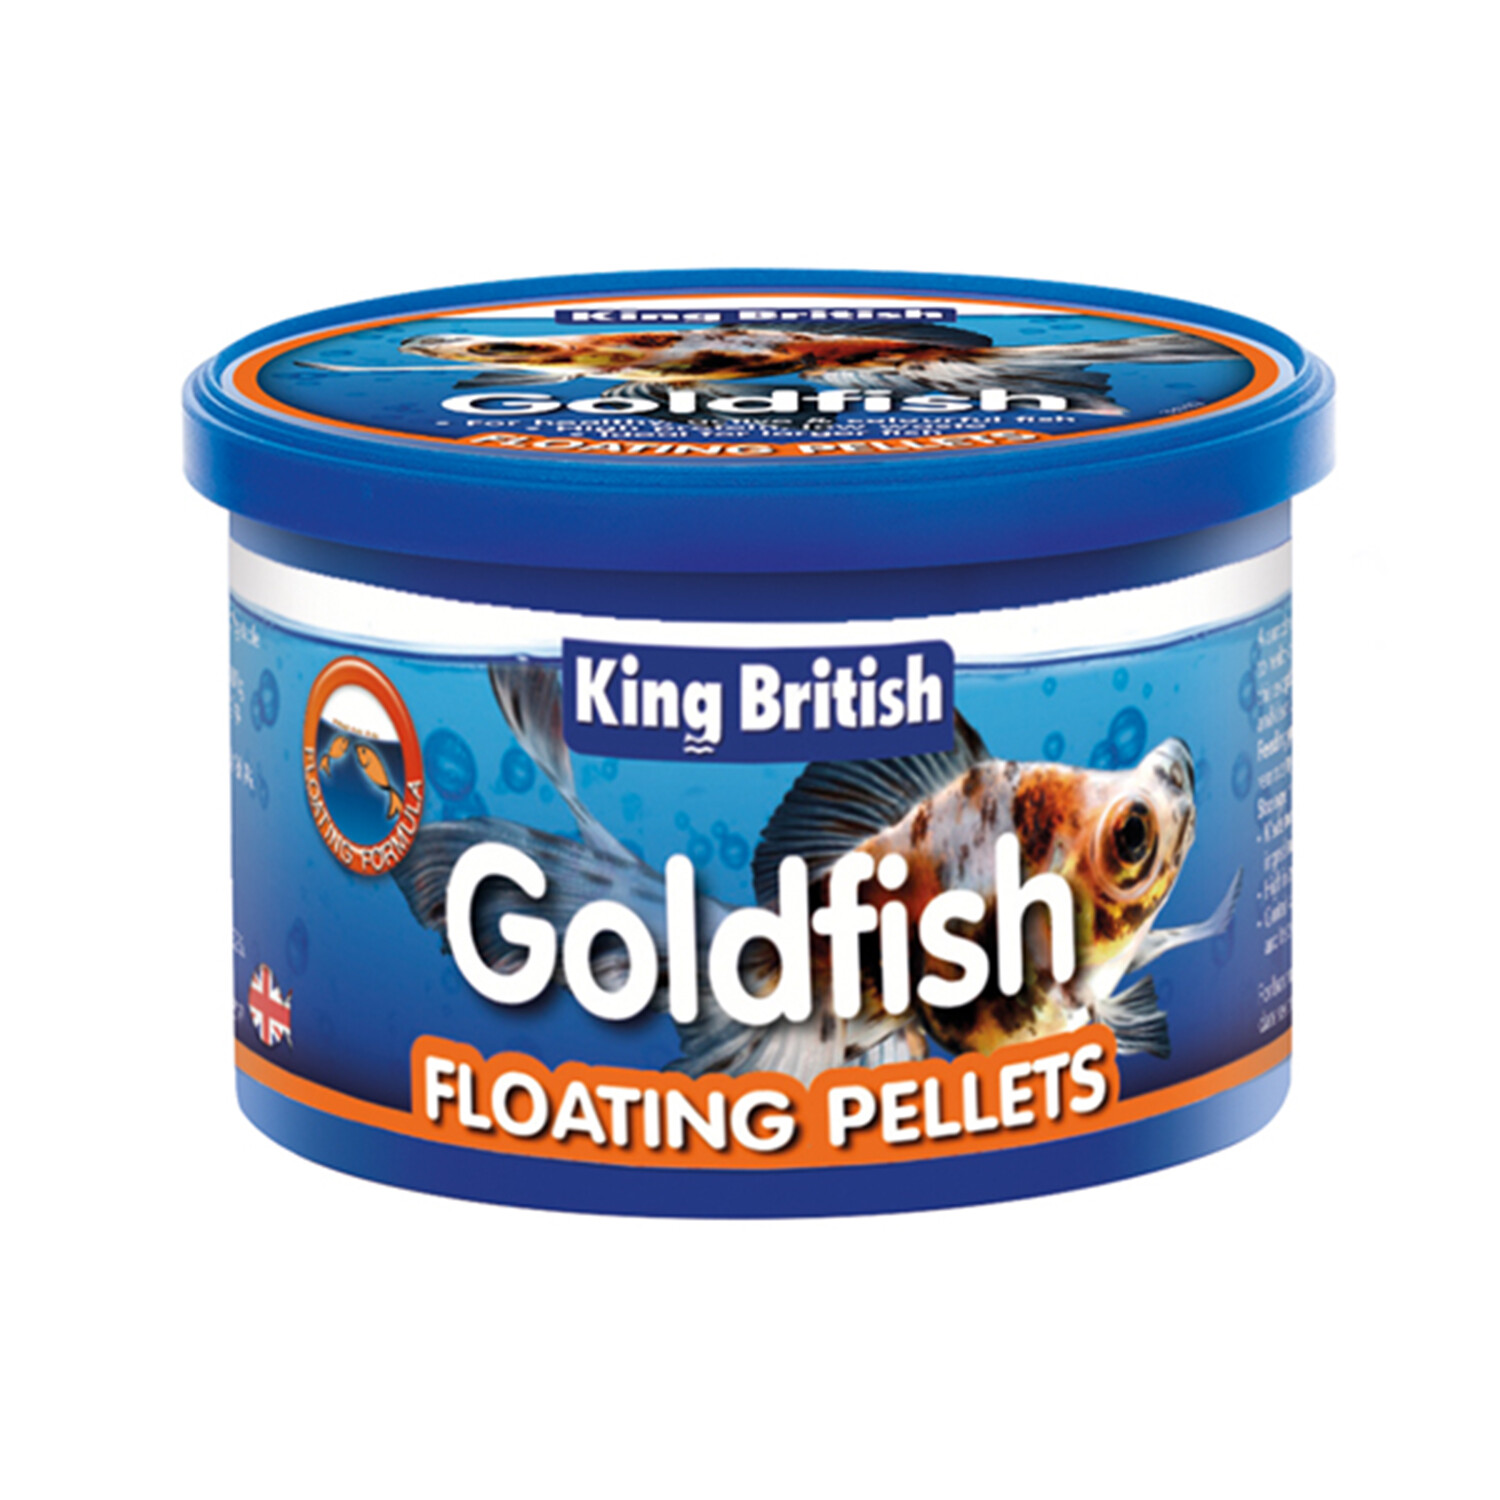 King British Goldfish Floating Pellets Image